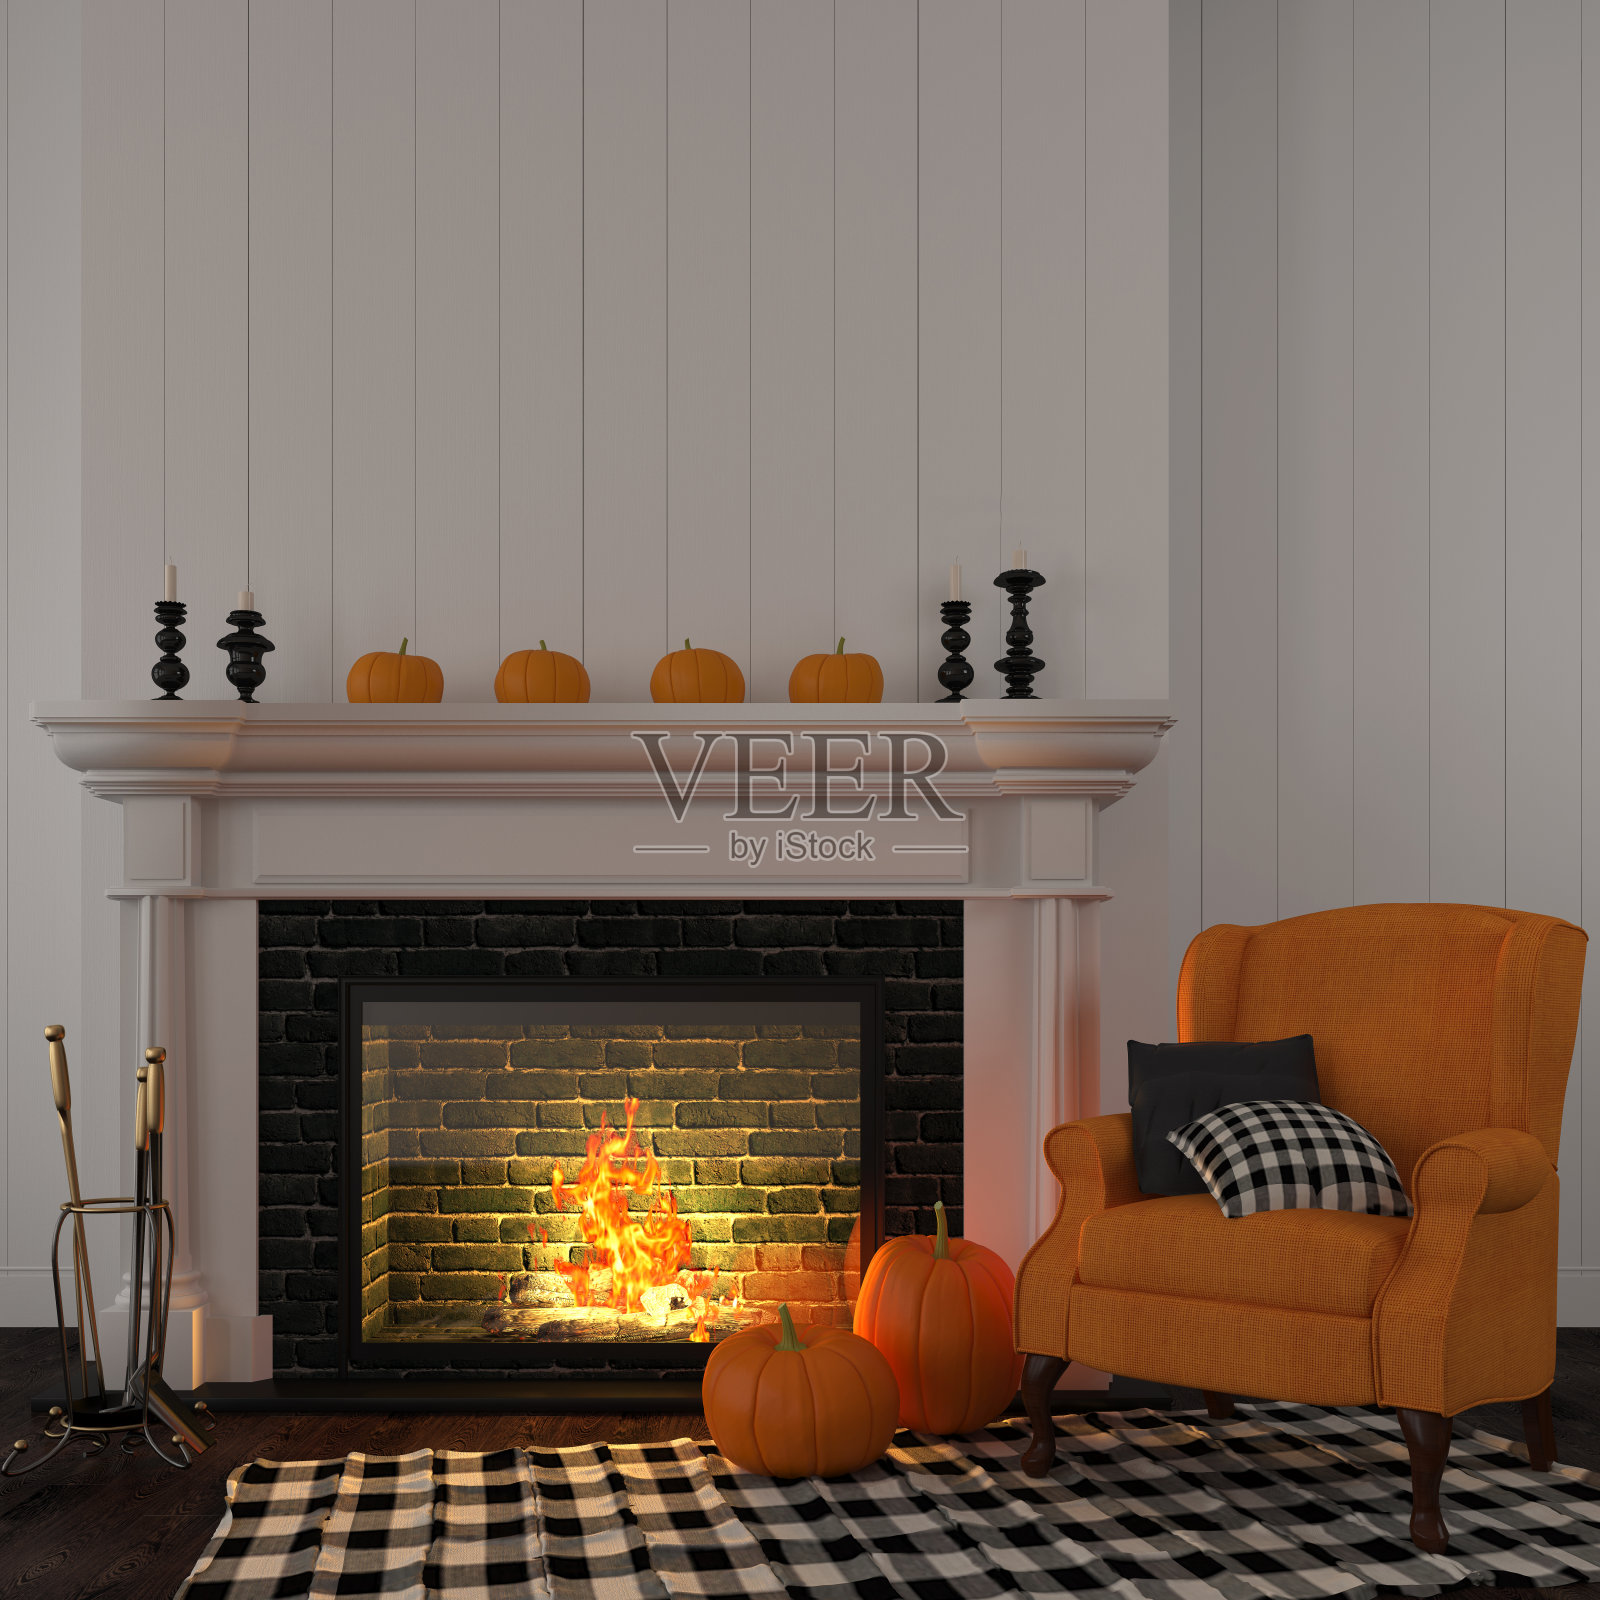 壁炉旁边的老式橙色扶手椅照片摄影图片